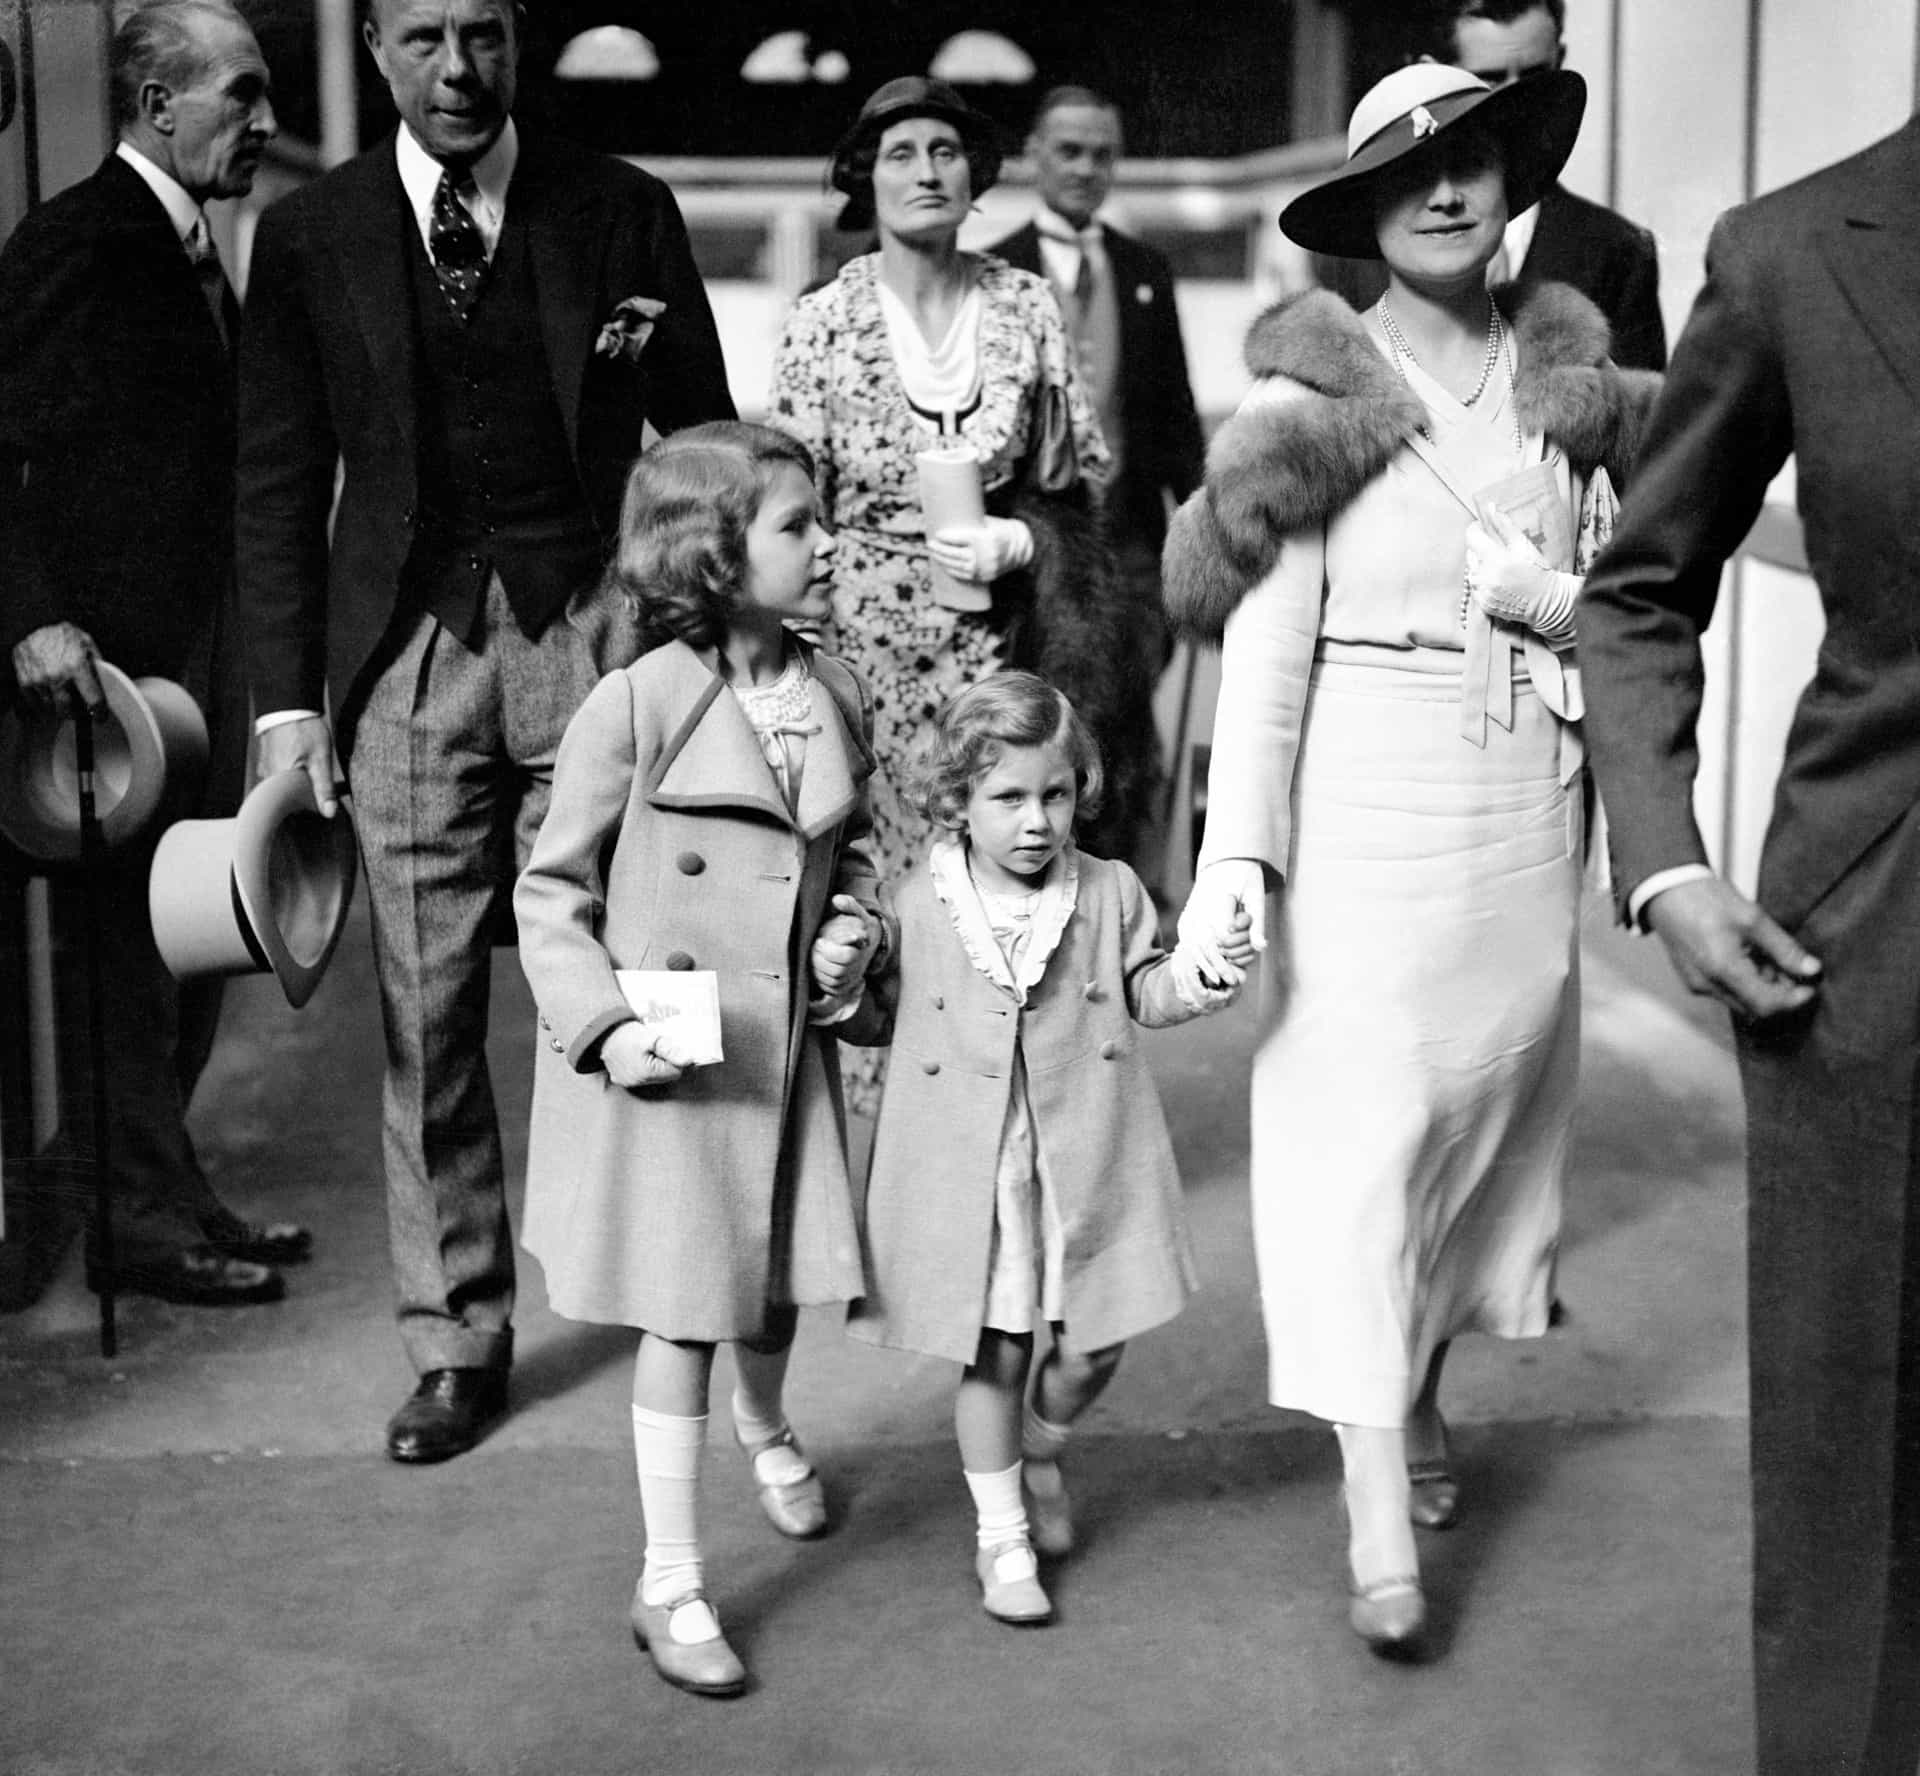 1936, als der Onkel väterlicherseits, König Eduard VIII., abdankte, um seine zweimal geschiedene amerikanische Geliebte Wallace Simpson heiraten zu können, rückte das Leben der Mädchen in den <a href="https://de.starsinsider.com/lifestyle/379630/royals-vs-paparazzi-eine-historische-erzaehlung-ueber-liebe-und-hass" rel="noopener">Blickpunkt der Öffentlichkeit</a>.